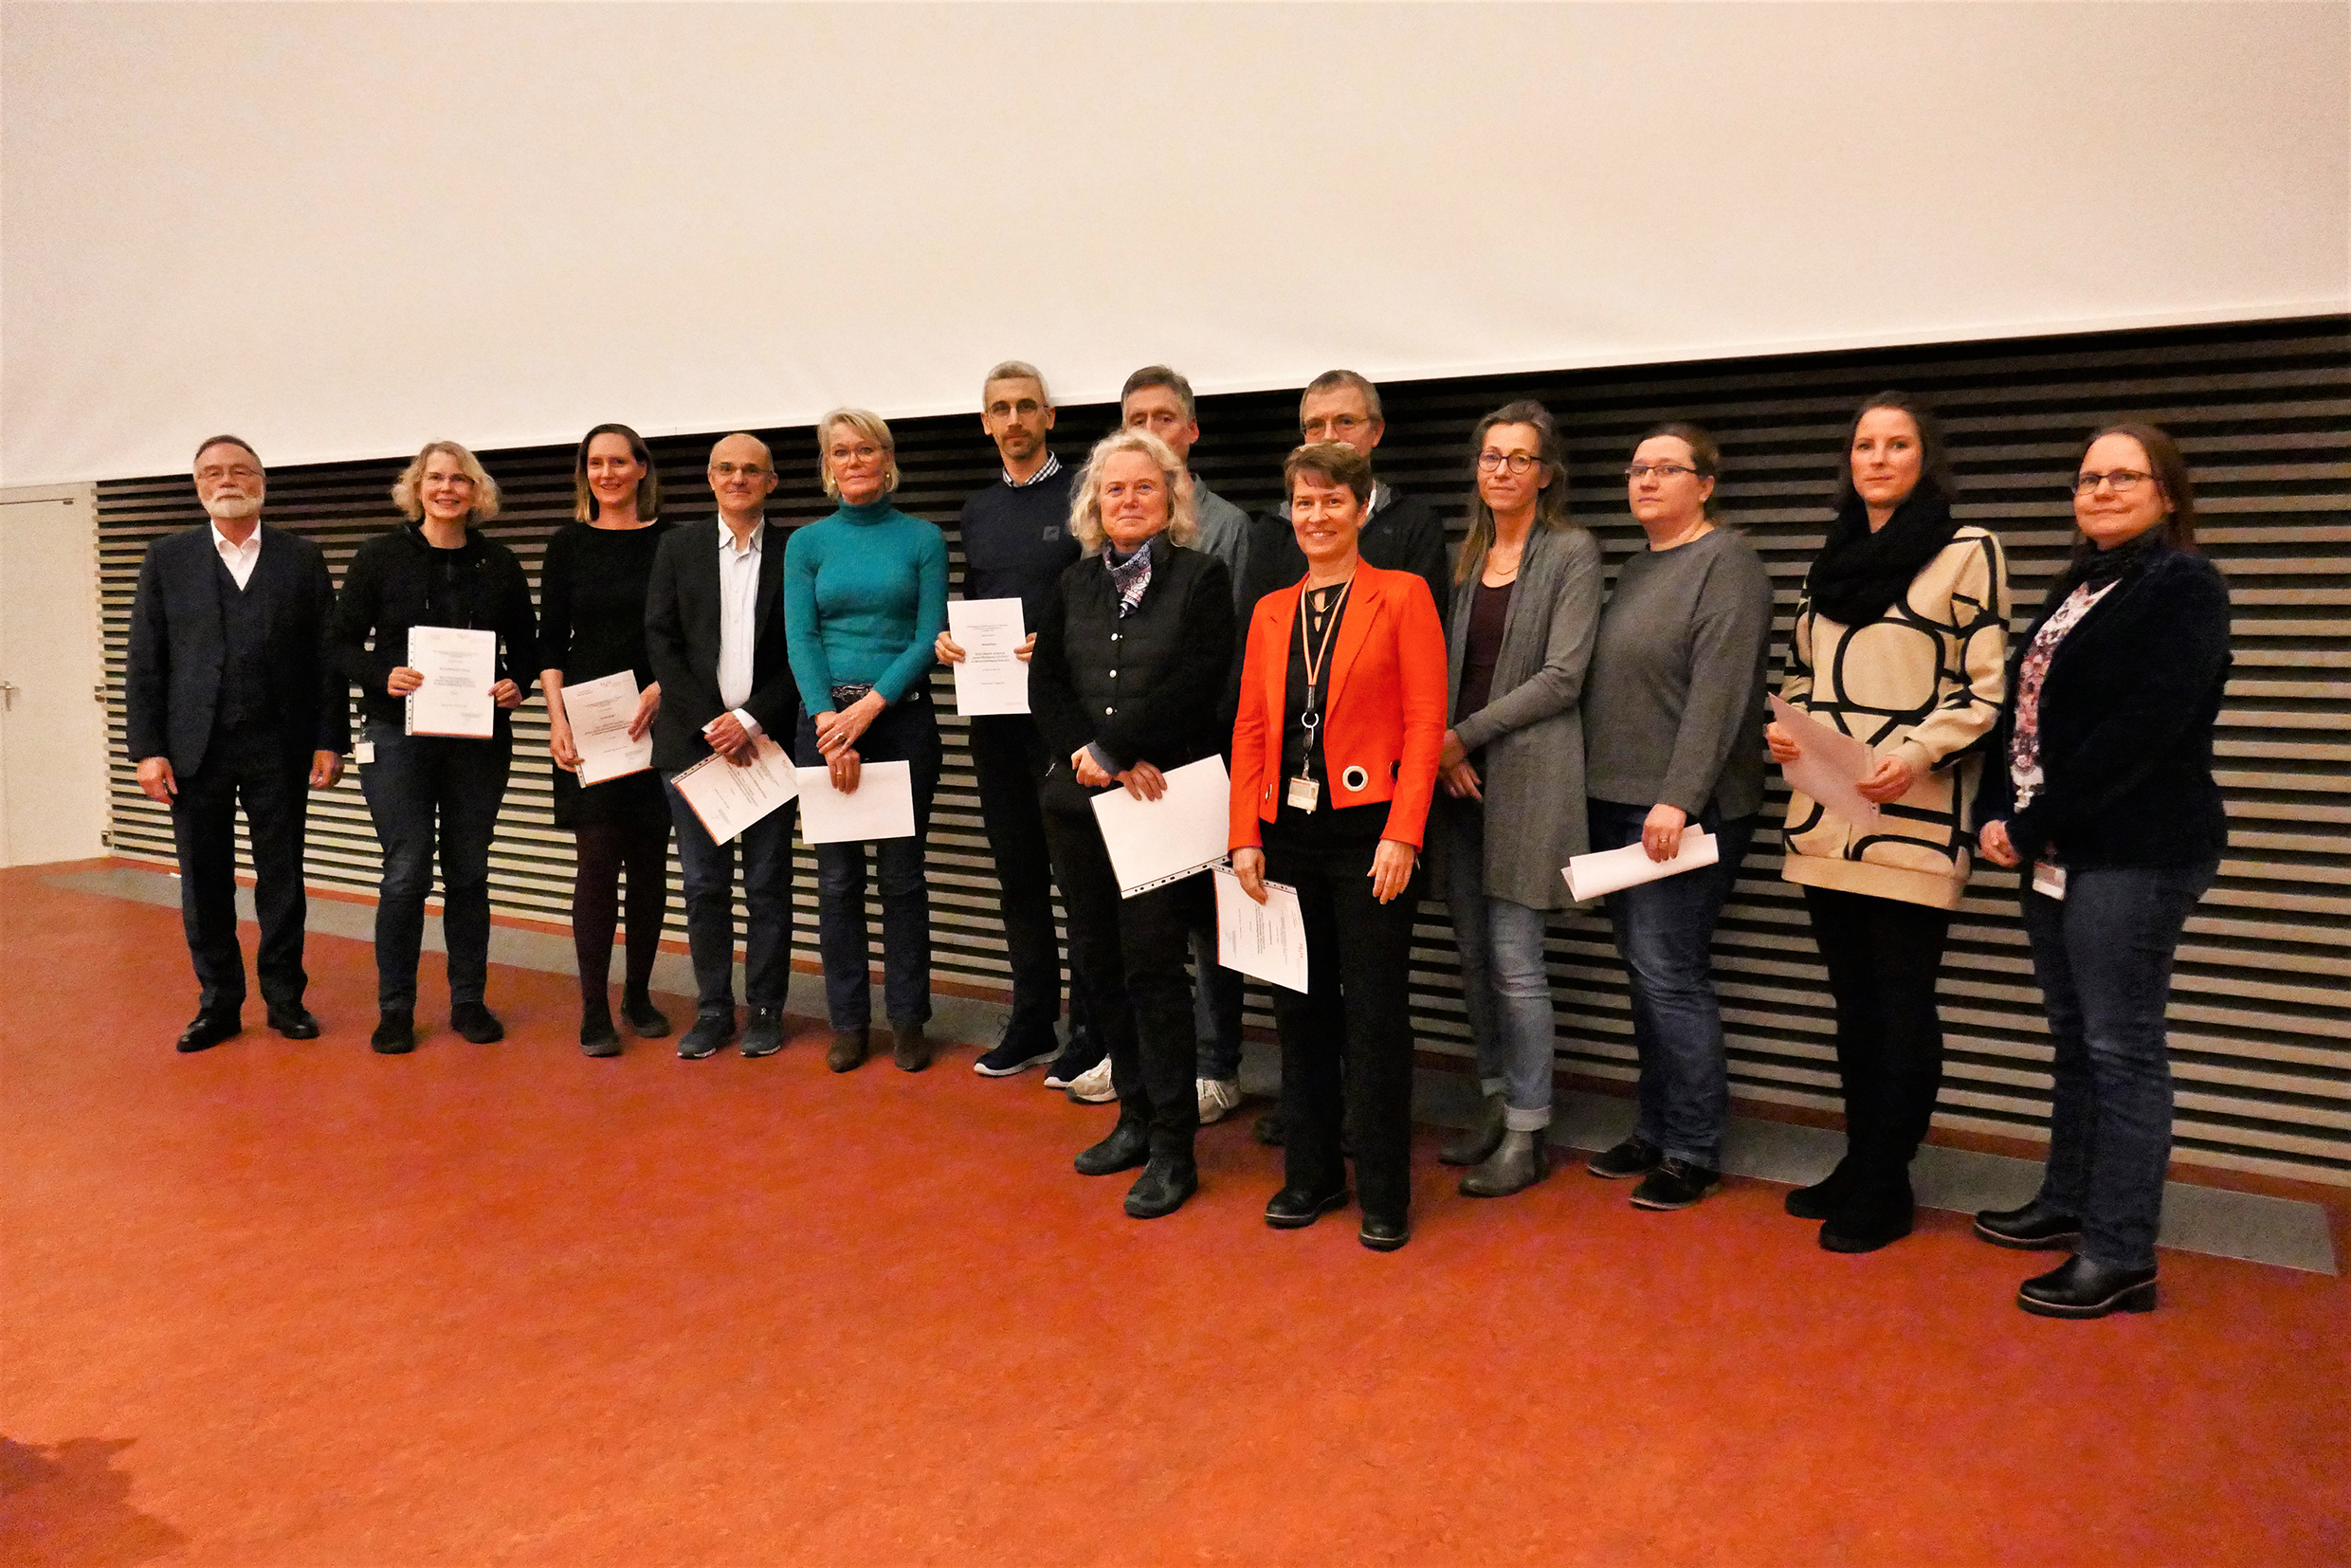 Stolz und dankbar für die Auszeichnung durch die Studierenden: Die Lehrpreisträgerinnen und Lehrpreisträger der biowissenschaftlichen Masterstudiengänge.